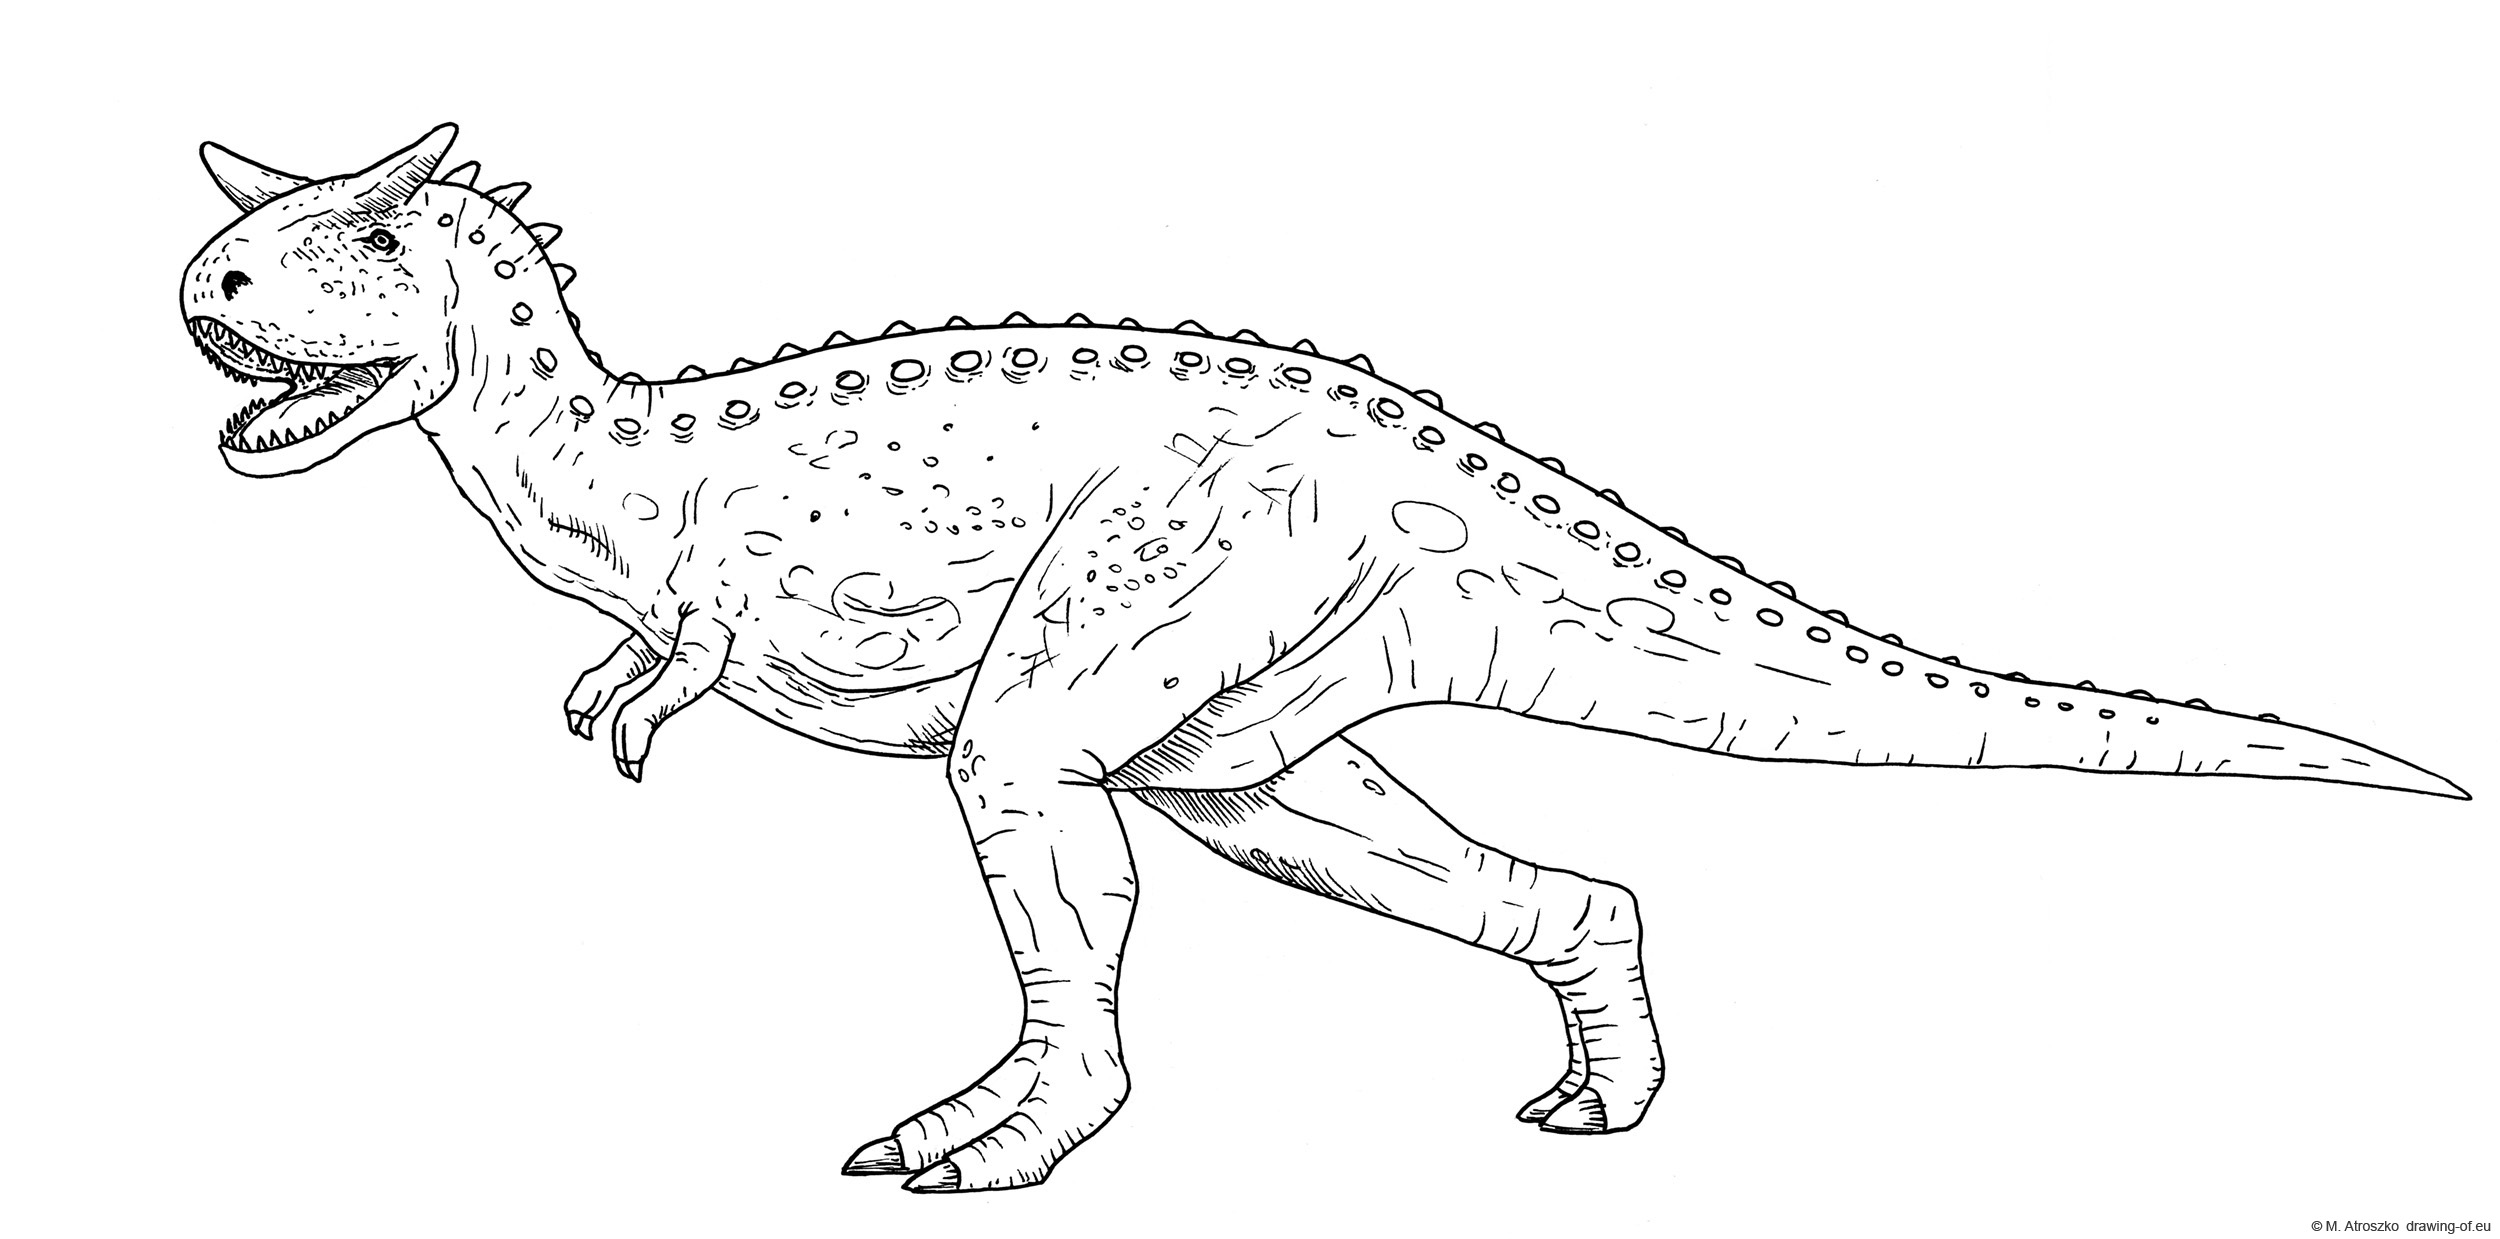 Carnotaurus drawing